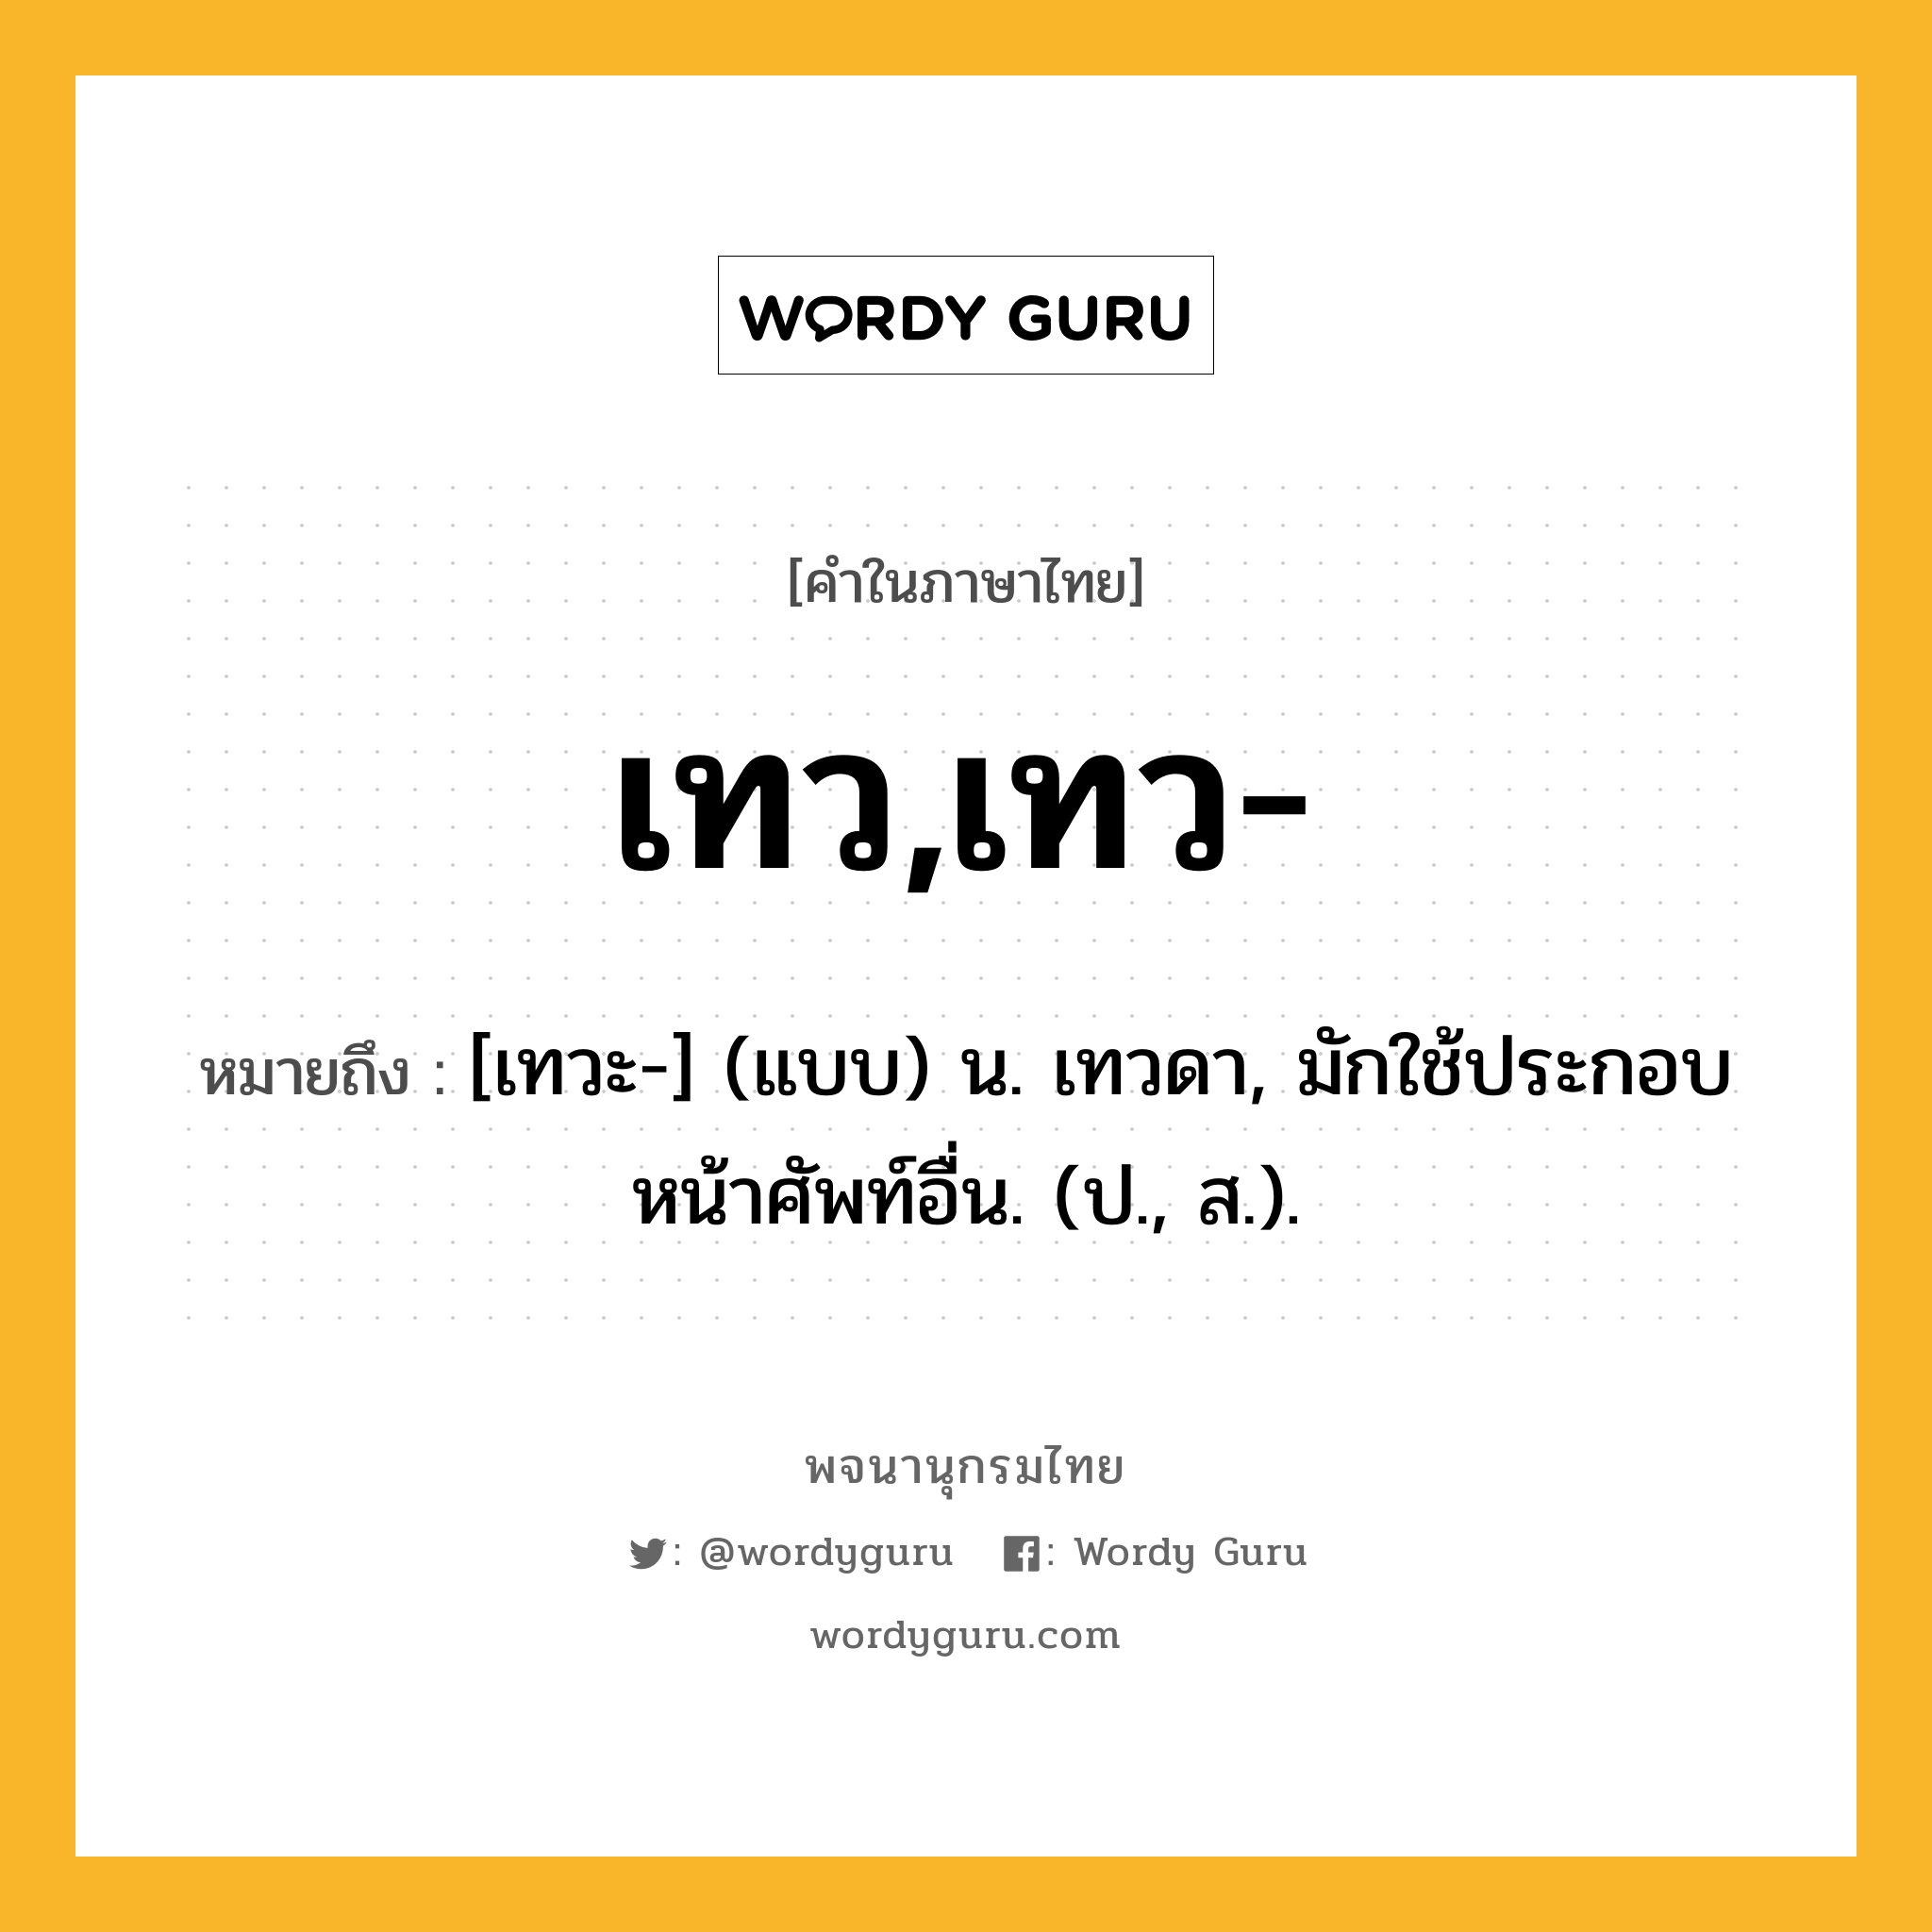 เทว,เทว- ความหมาย หมายถึงอะไร?, คำในภาษาไทย เทว,เทว- หมายถึง [เทวะ-] (แบบ) น. เทวดา, มักใช้ประกอบหน้าศัพท์อื่น. (ป., ส.).